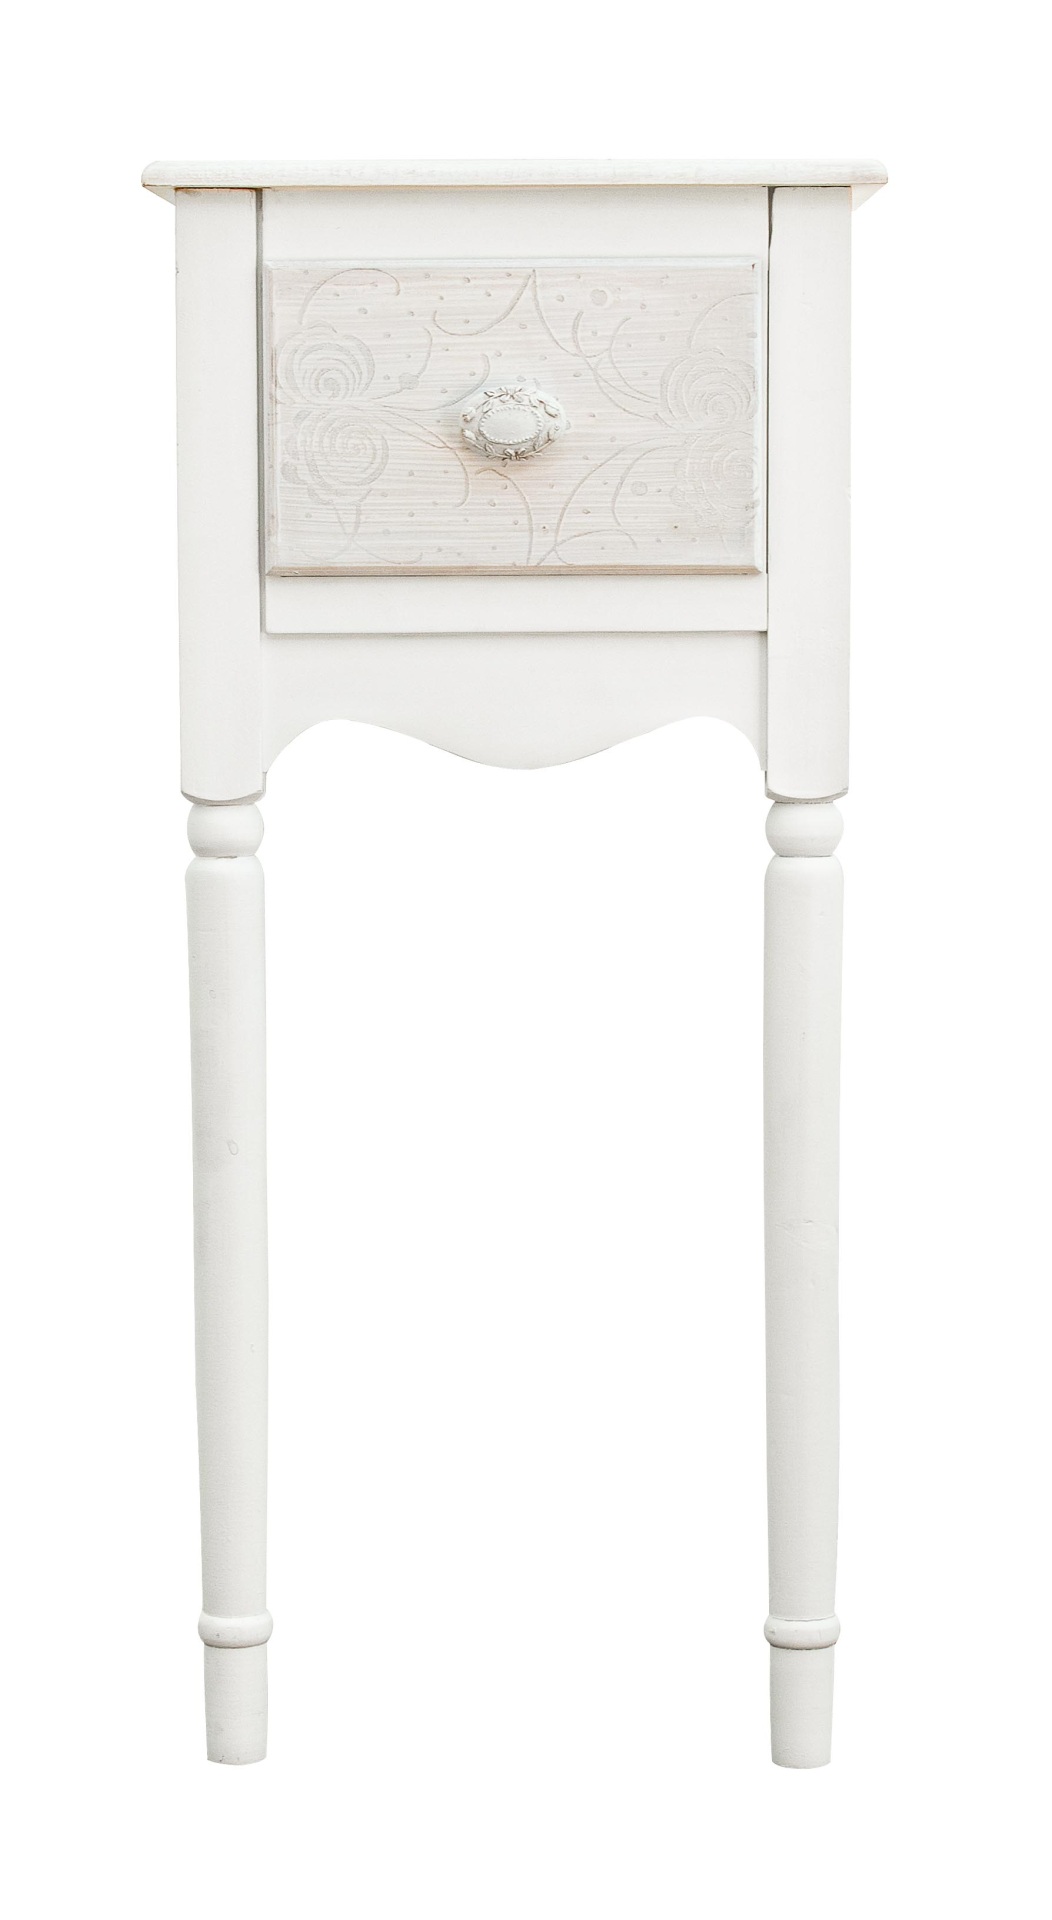 Der Nachttisch Clorinne überzeugt mit seinem klassischen Design. Gefertigt wurde er aus MDF, welches einen weißen Farbton besitzt. Das Gestell ist auch aus MDF. Der Nachttisch verfügt über eine Schublade. Die Breite beträgt 33 cm.